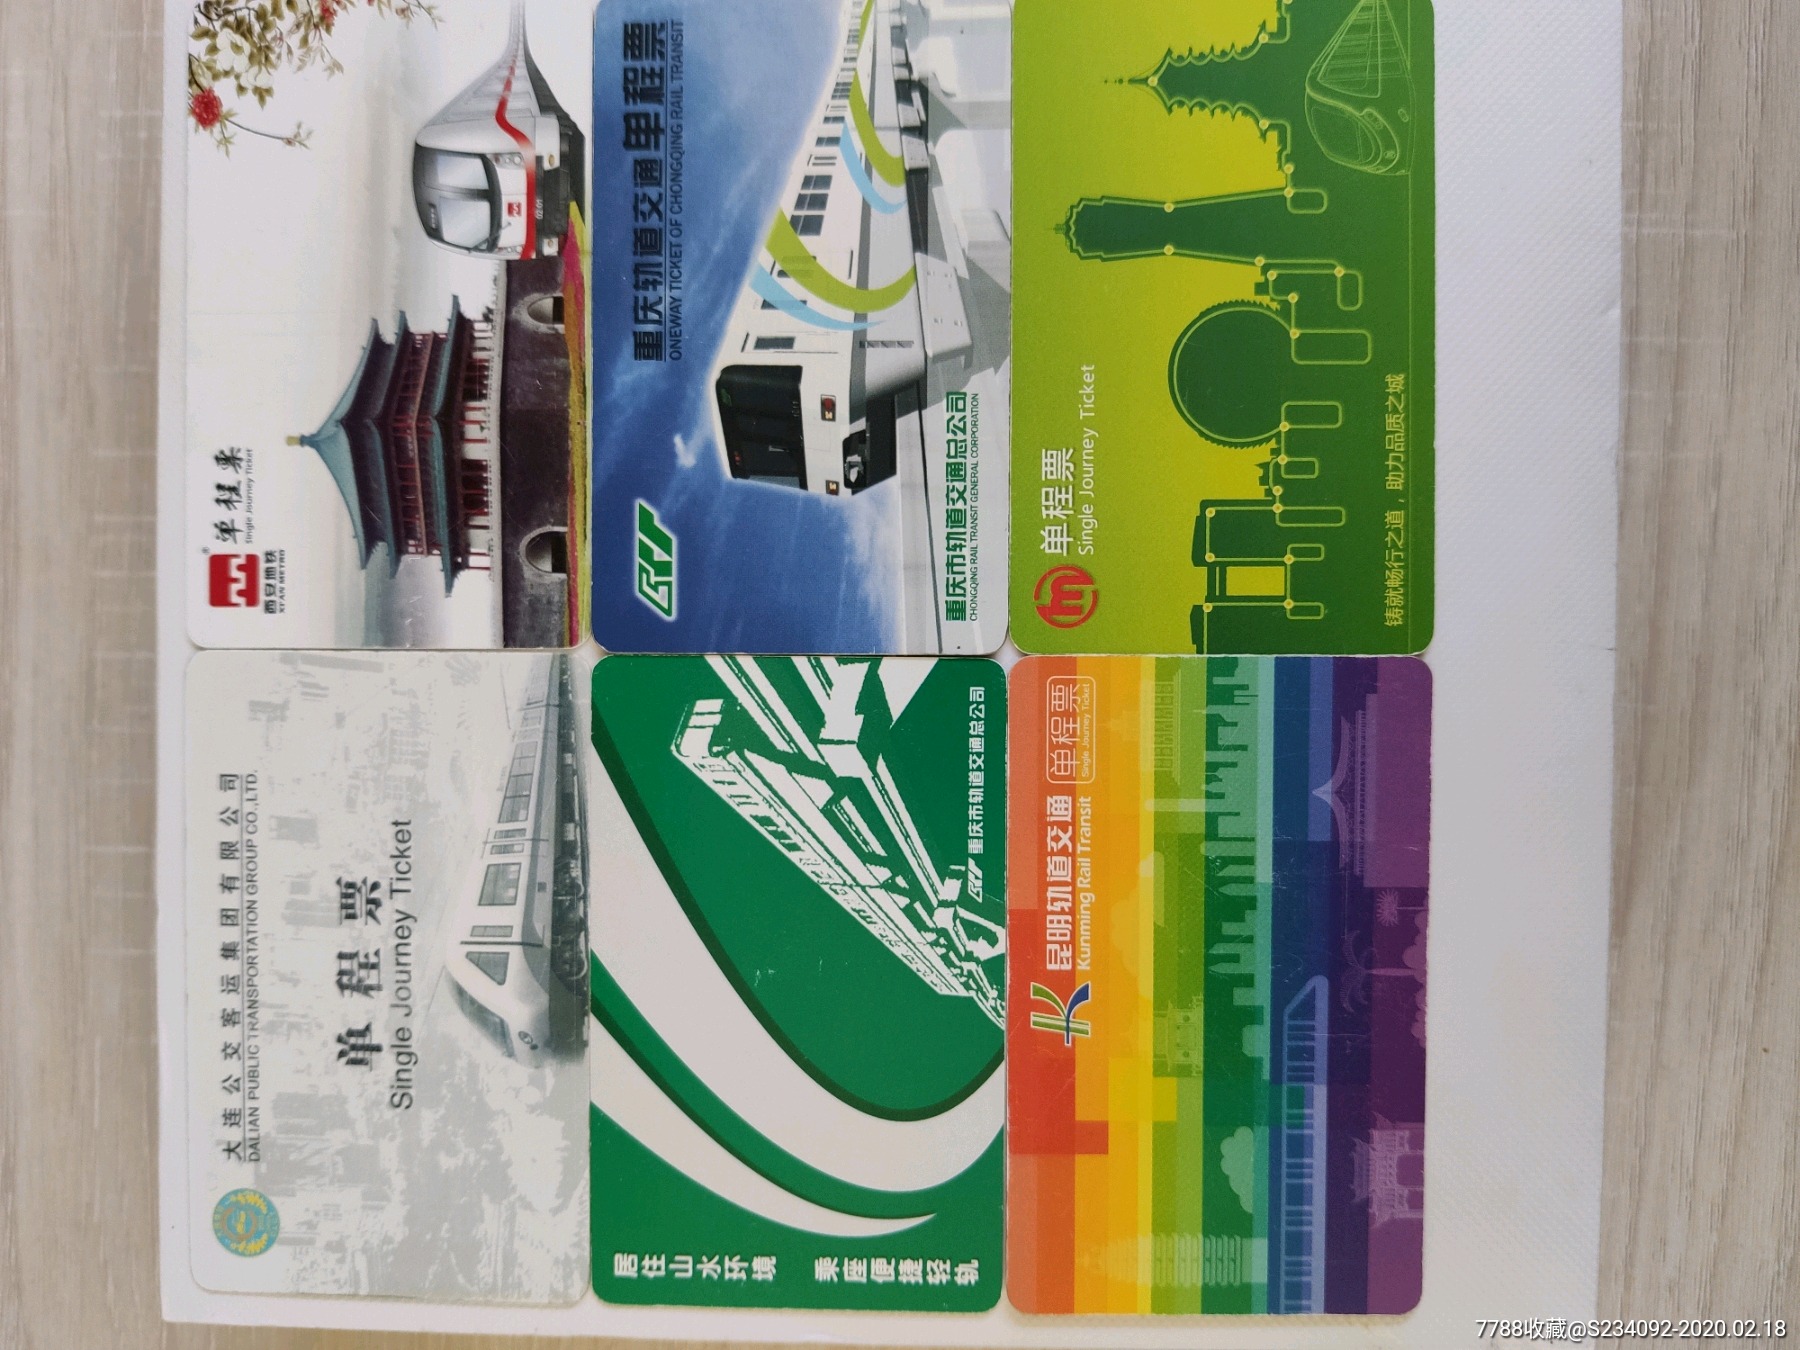 沈阳地铁单程票图片